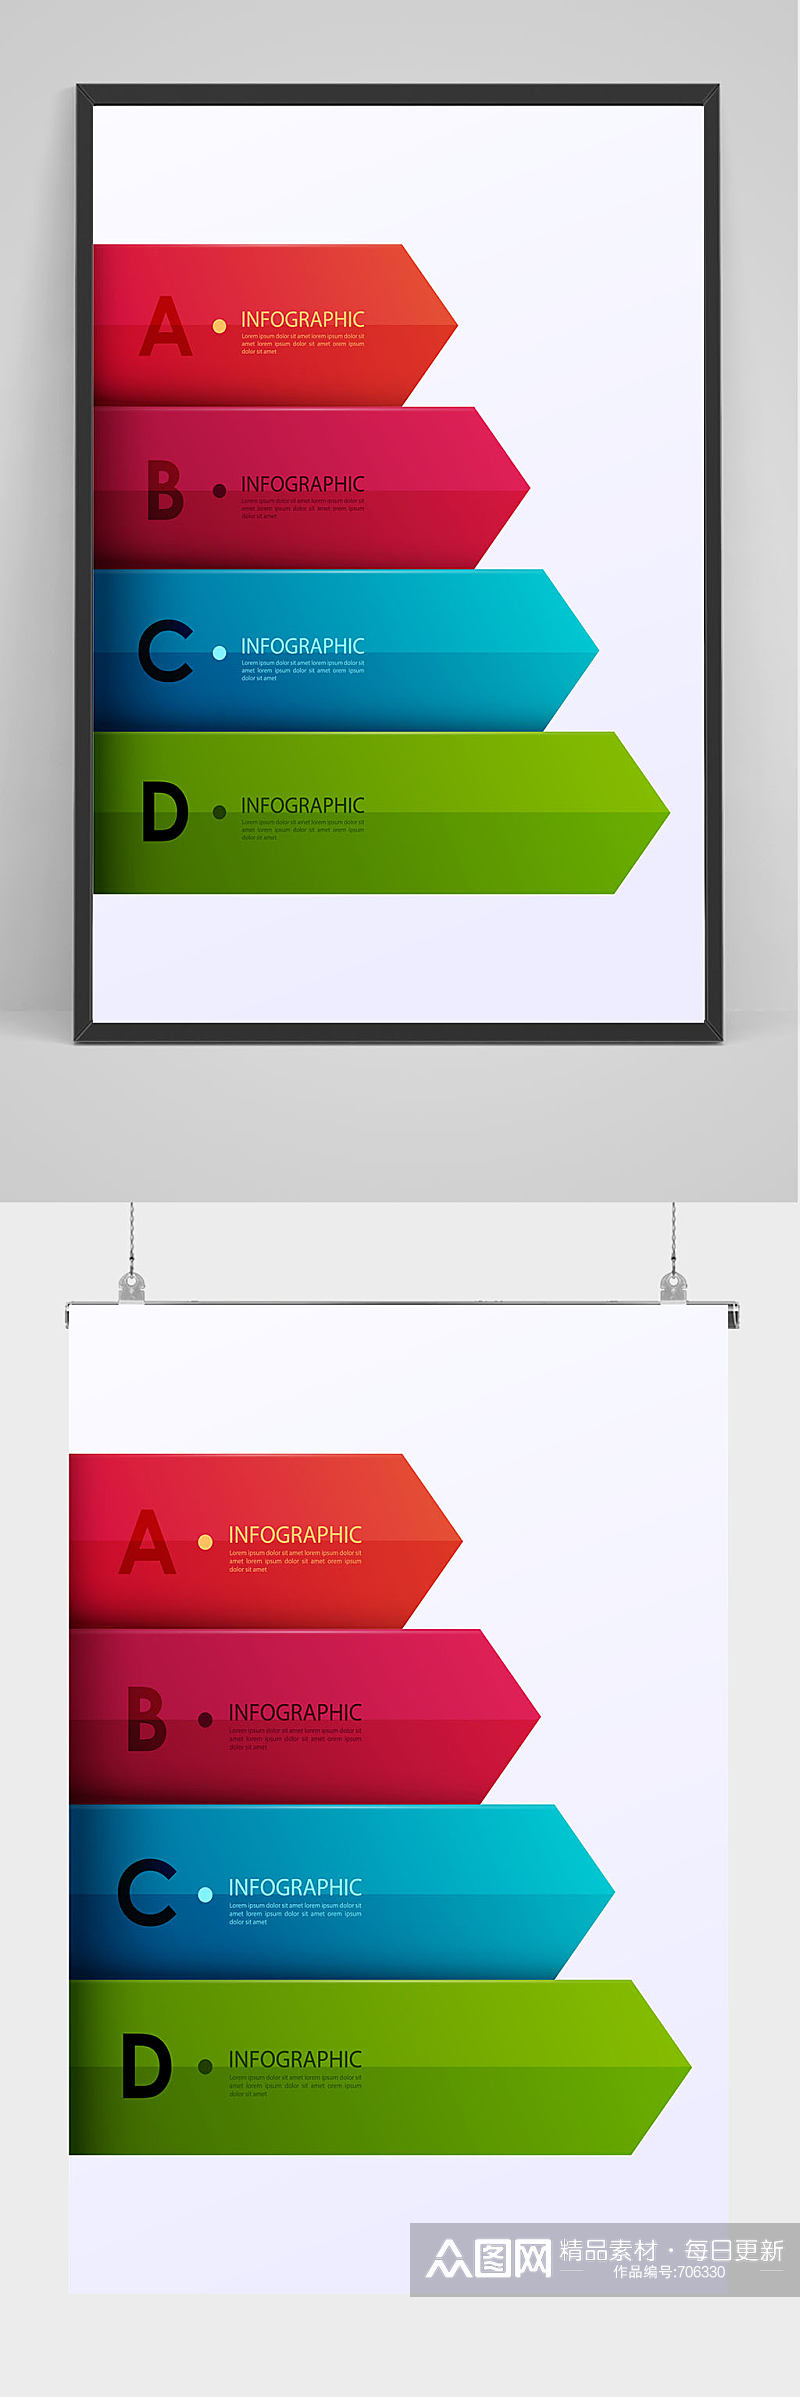 商务几何图形公司通用海报背景模板设计素材